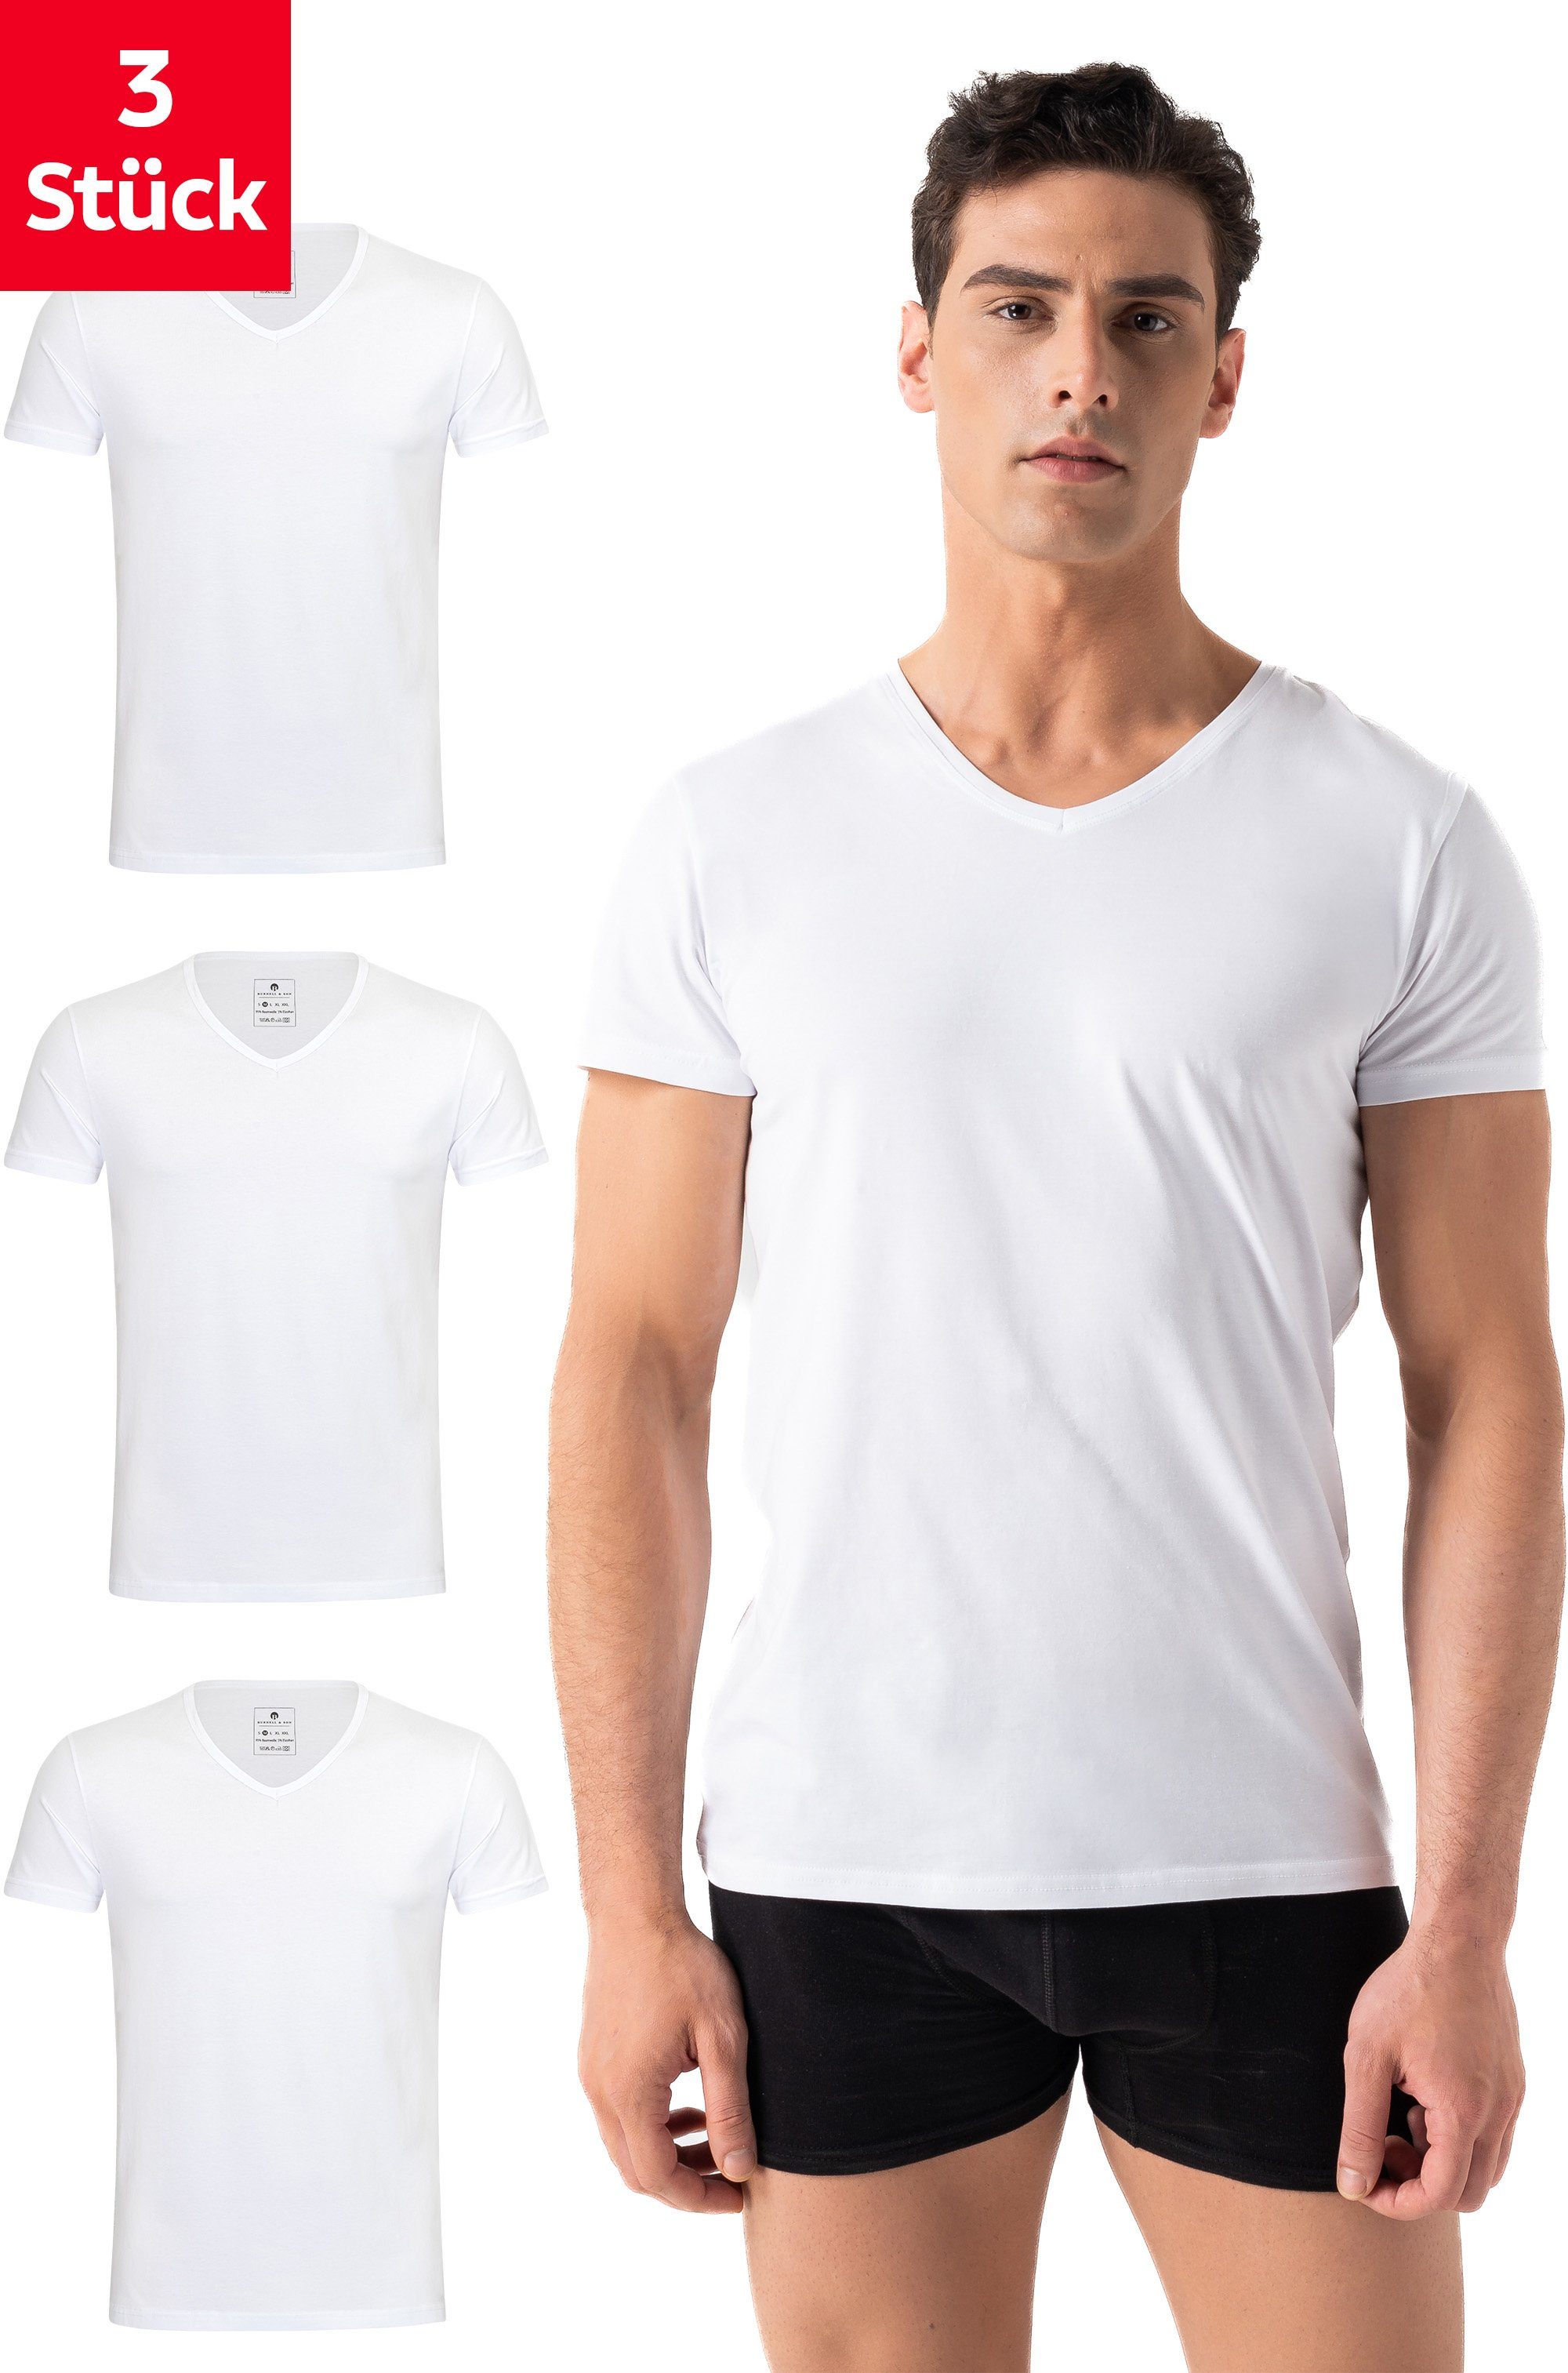 T-Shirt Kurzarm mit V-Neck Ausschnitt Unterziehshirt Herren Unterhemd 2-3 Stück 